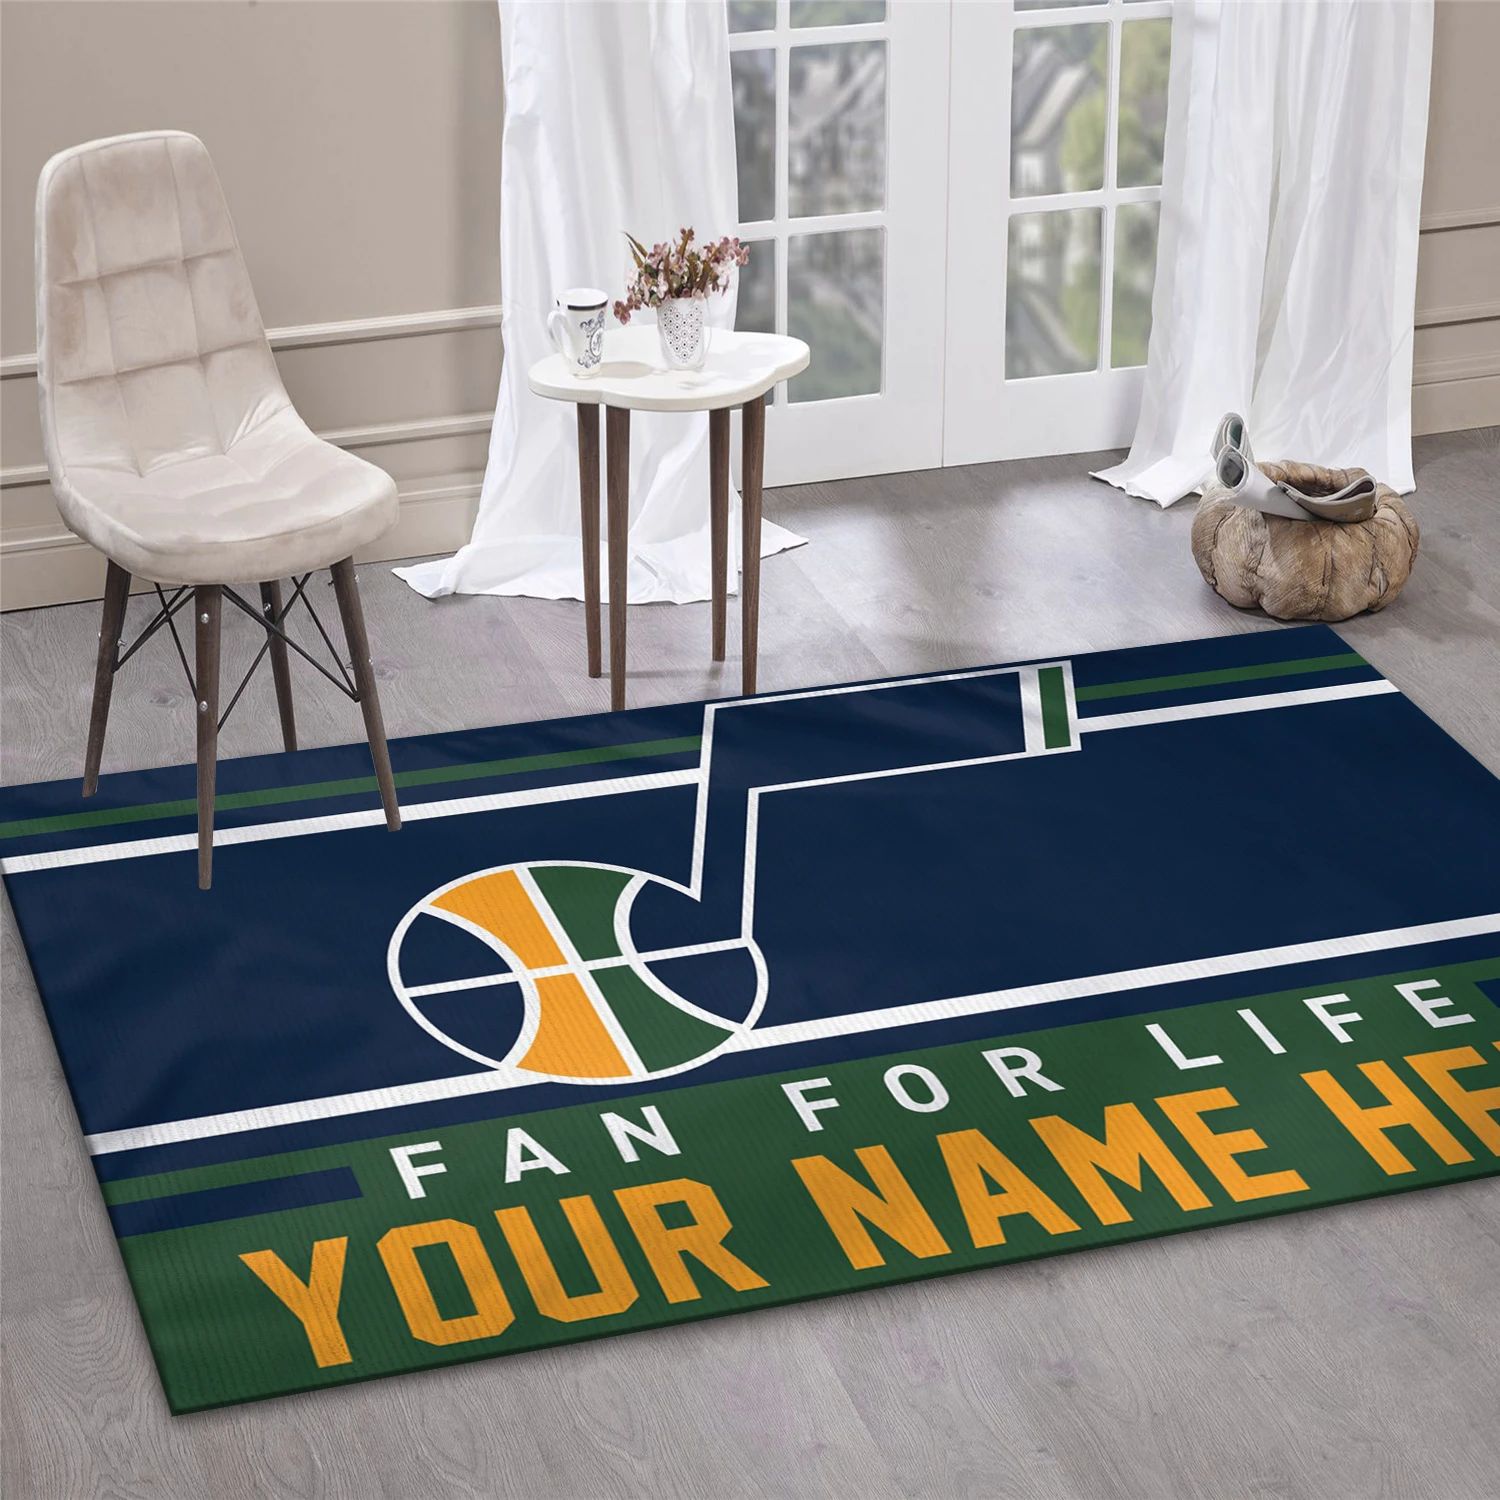 Utah Jazz NBA Team Logos Area Rug, Living Room Rug - Room Decor - Indoor Outdoor Rugs 1